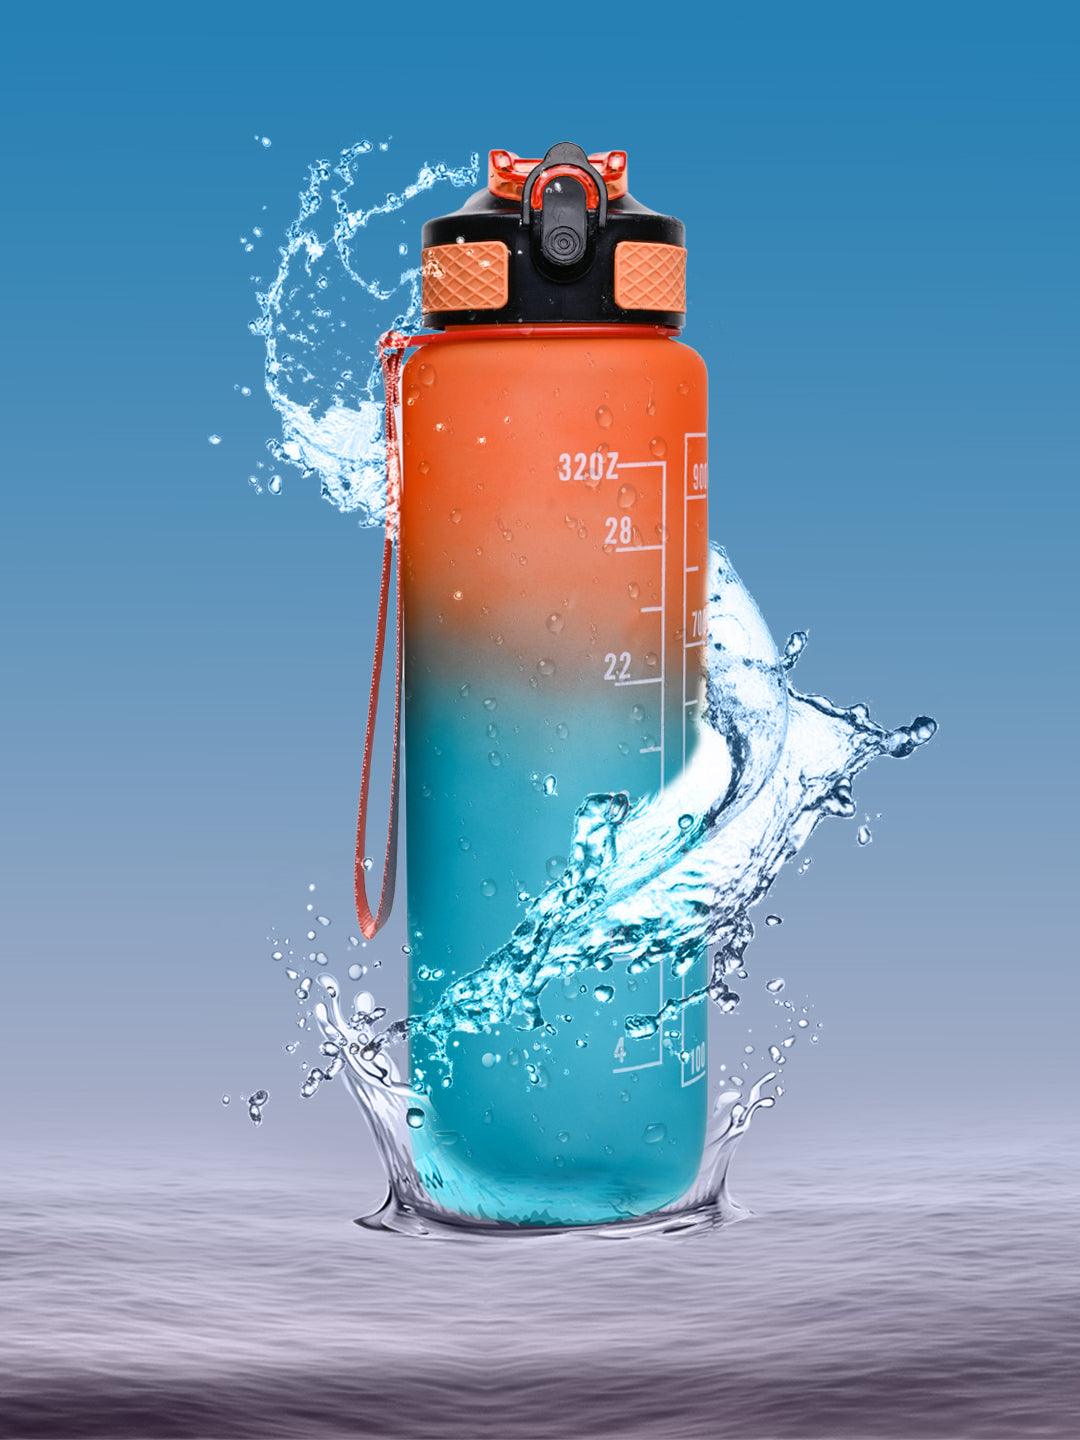 Market99 Motivational Sipper Water Bottle with Time Marker, Orange Mint, 1 Liter - MARKET 99